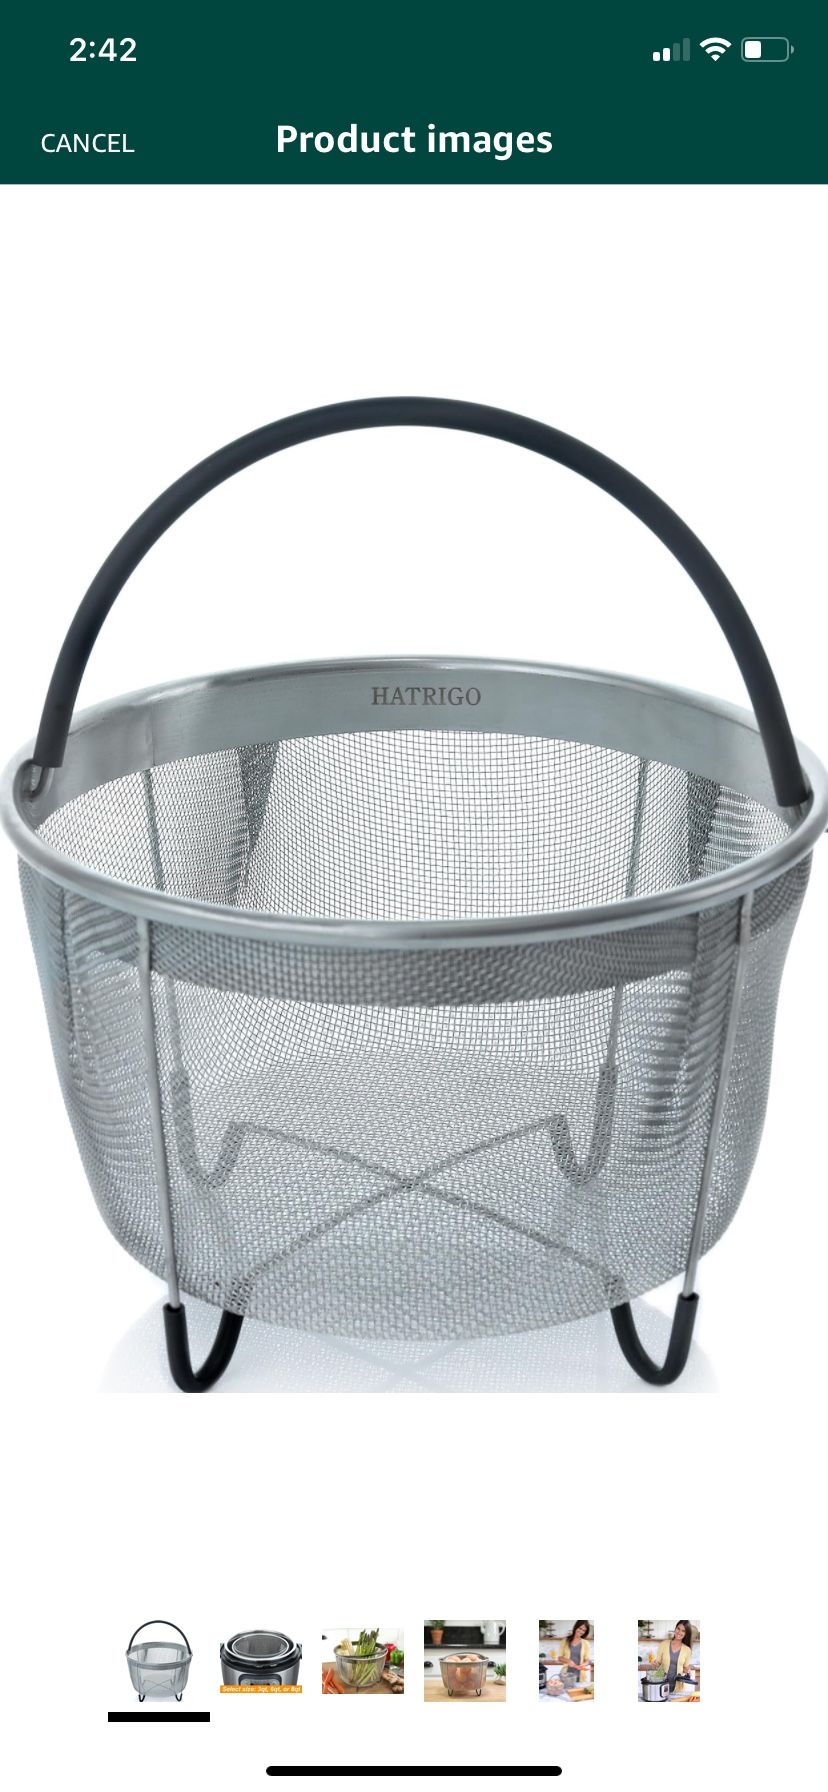 Hatrico Steamer Basket 8 Qt